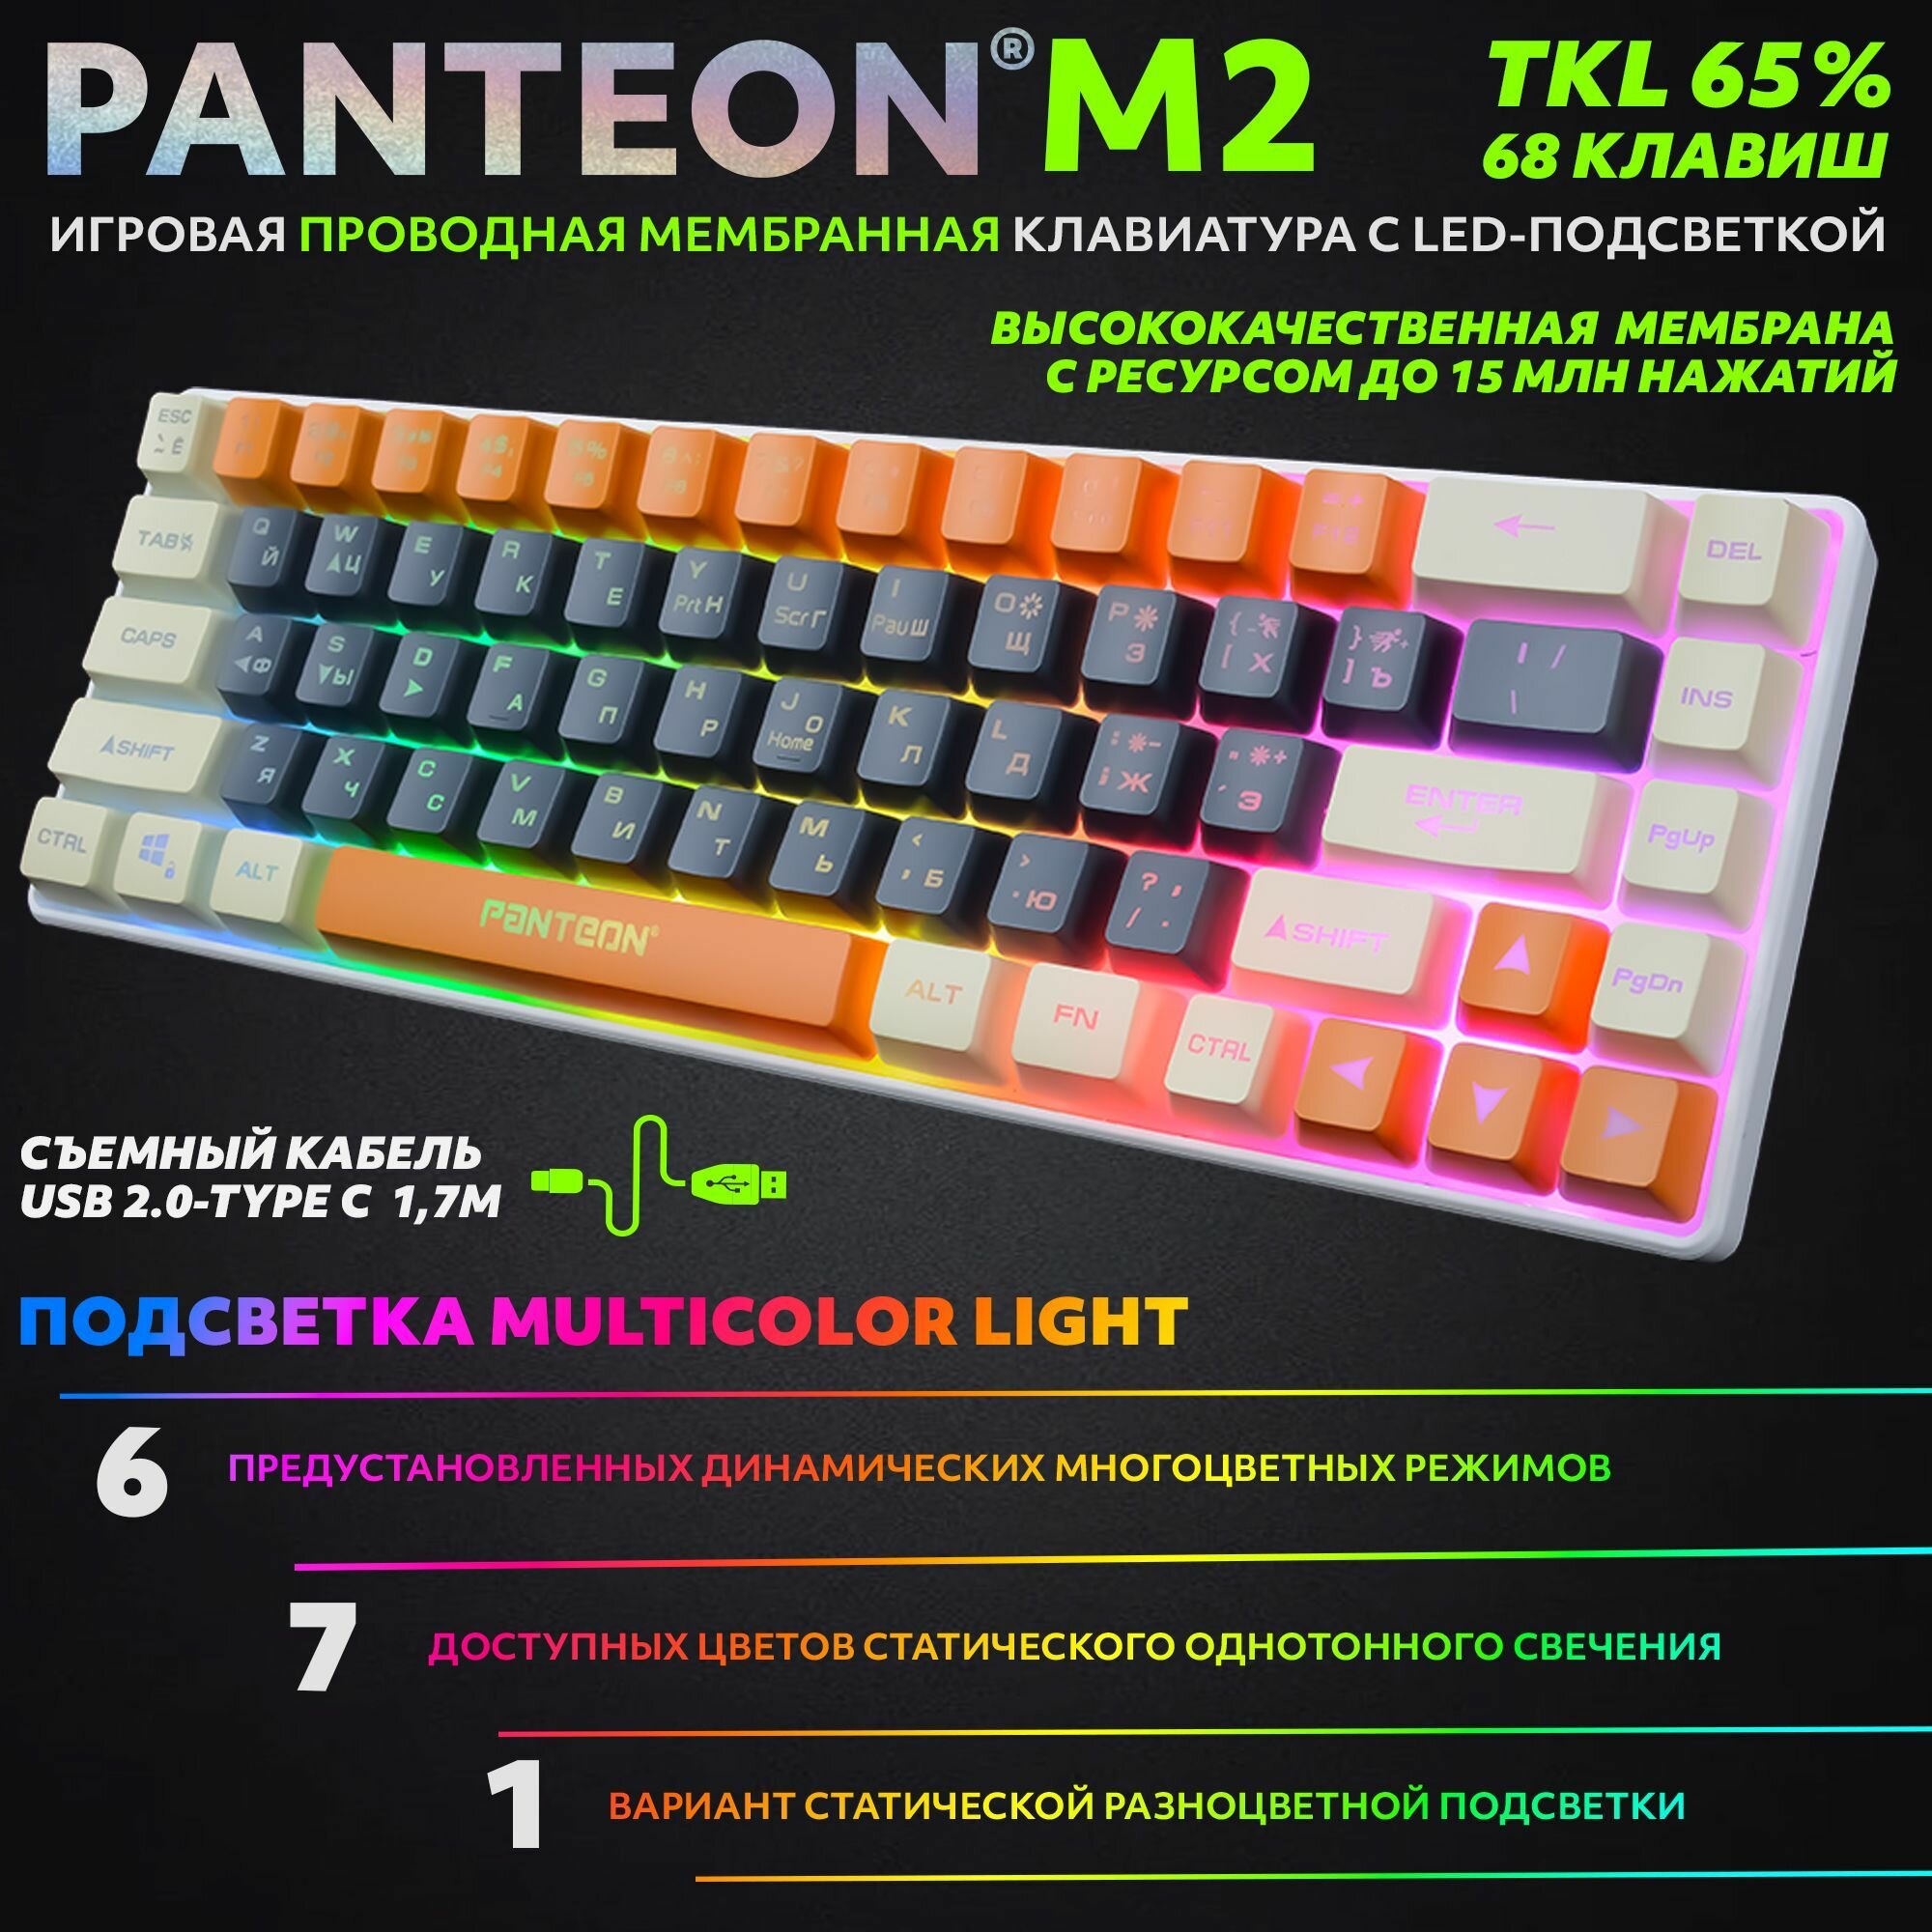 PANTEON M2 Grey-Ivory(02) Игровая мембранная TKL (65%) клавиатура с LED-подсветкой MULTICOLOR (68 кл.,USB), цвет: серый-слоновая кость (02)